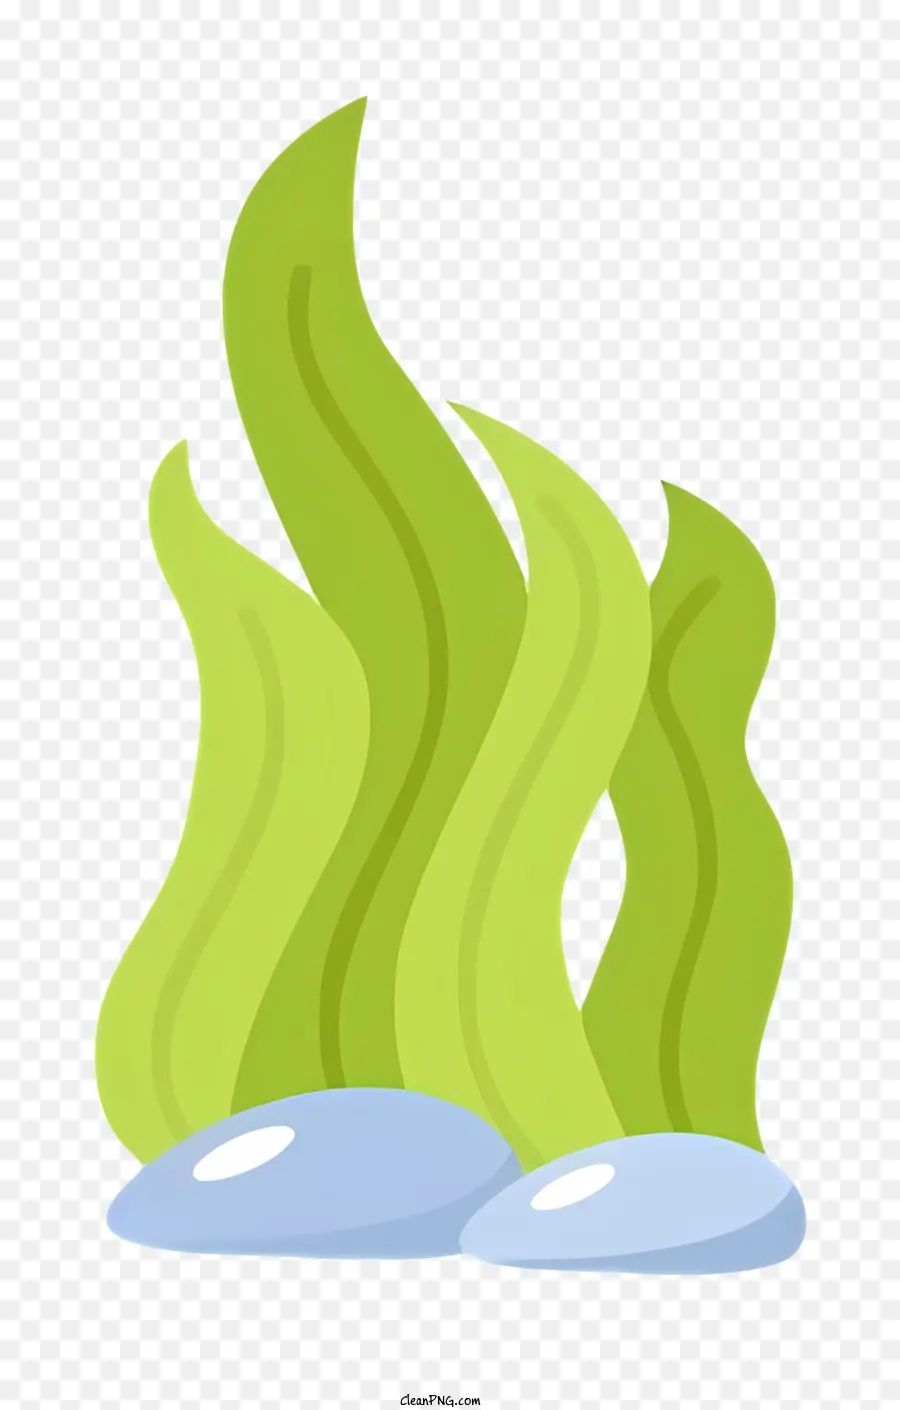 Verde Verde Fiamma che brilla incantani galleggianti fluttuanti fumetti simili a cartone animato - Fiamma verde galleggiante in stile cartone animato con bagliore blu